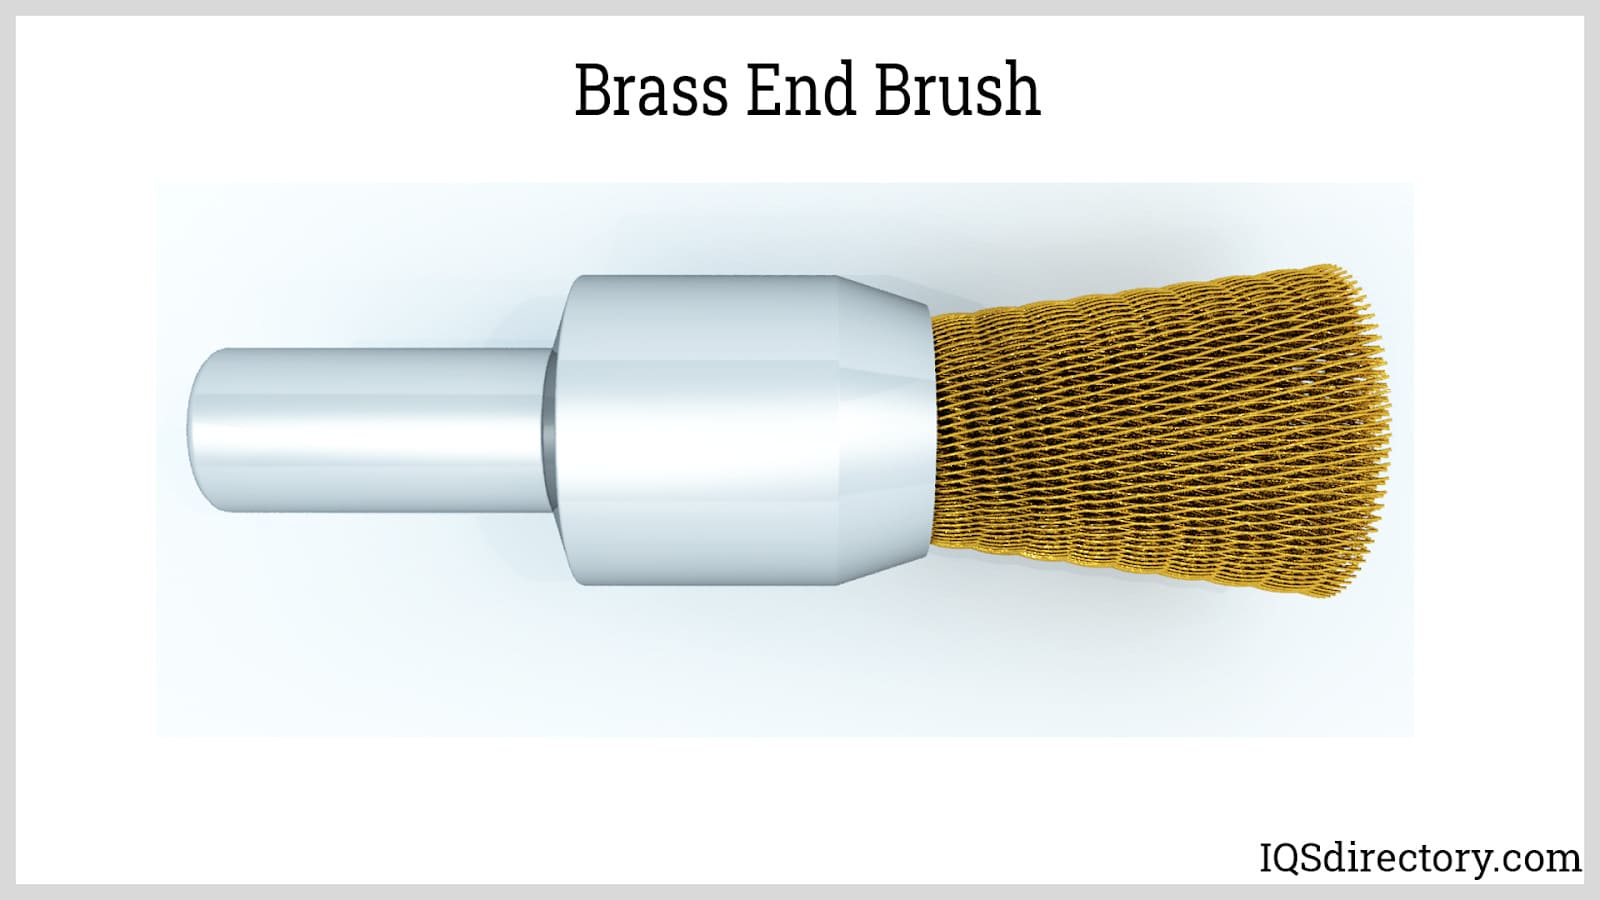 https://www.iqsdirectory.com/articles/brush/wire-brush/brass-end-brush.jpg